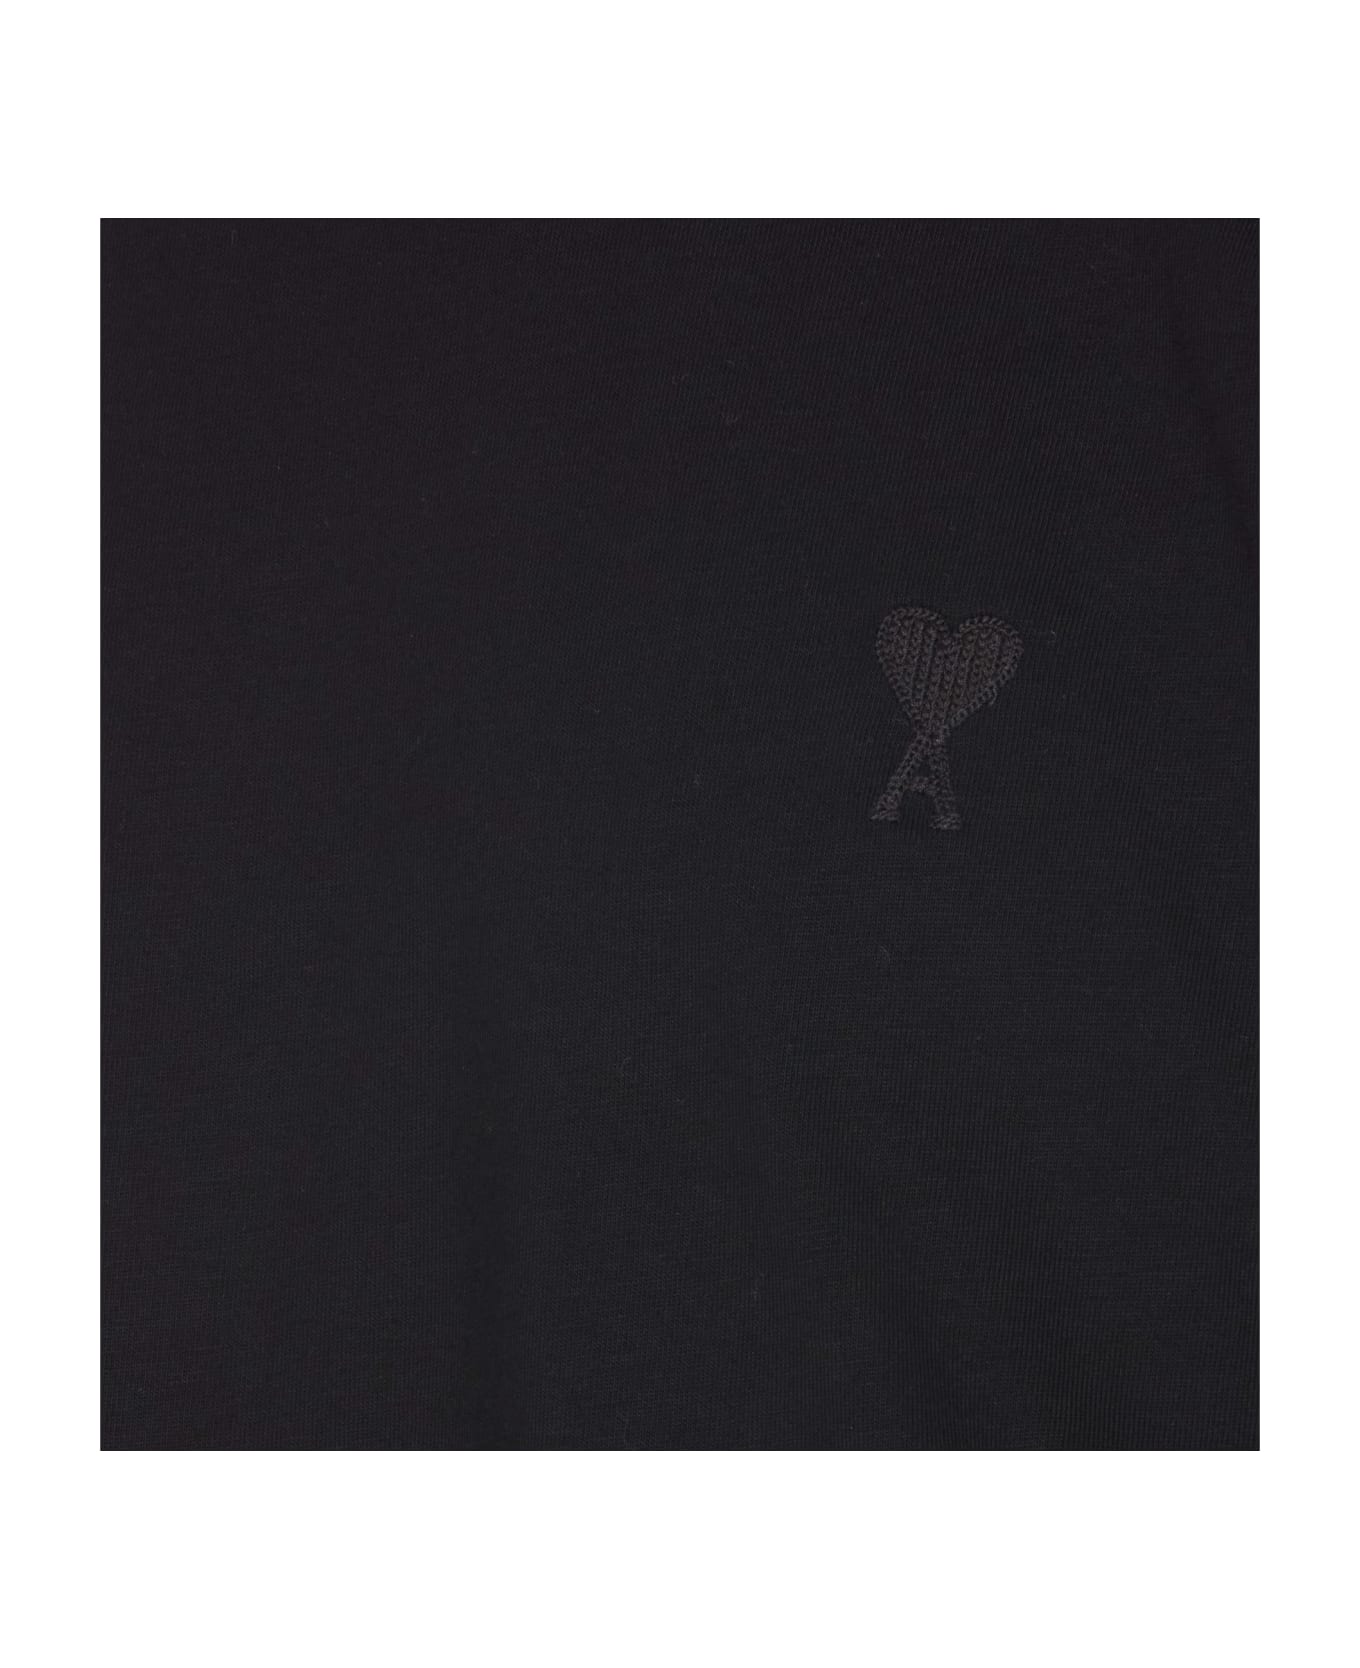 Ami Alexandre Mattiussi Ami De Coeur T-shirt - BLACK シャツ